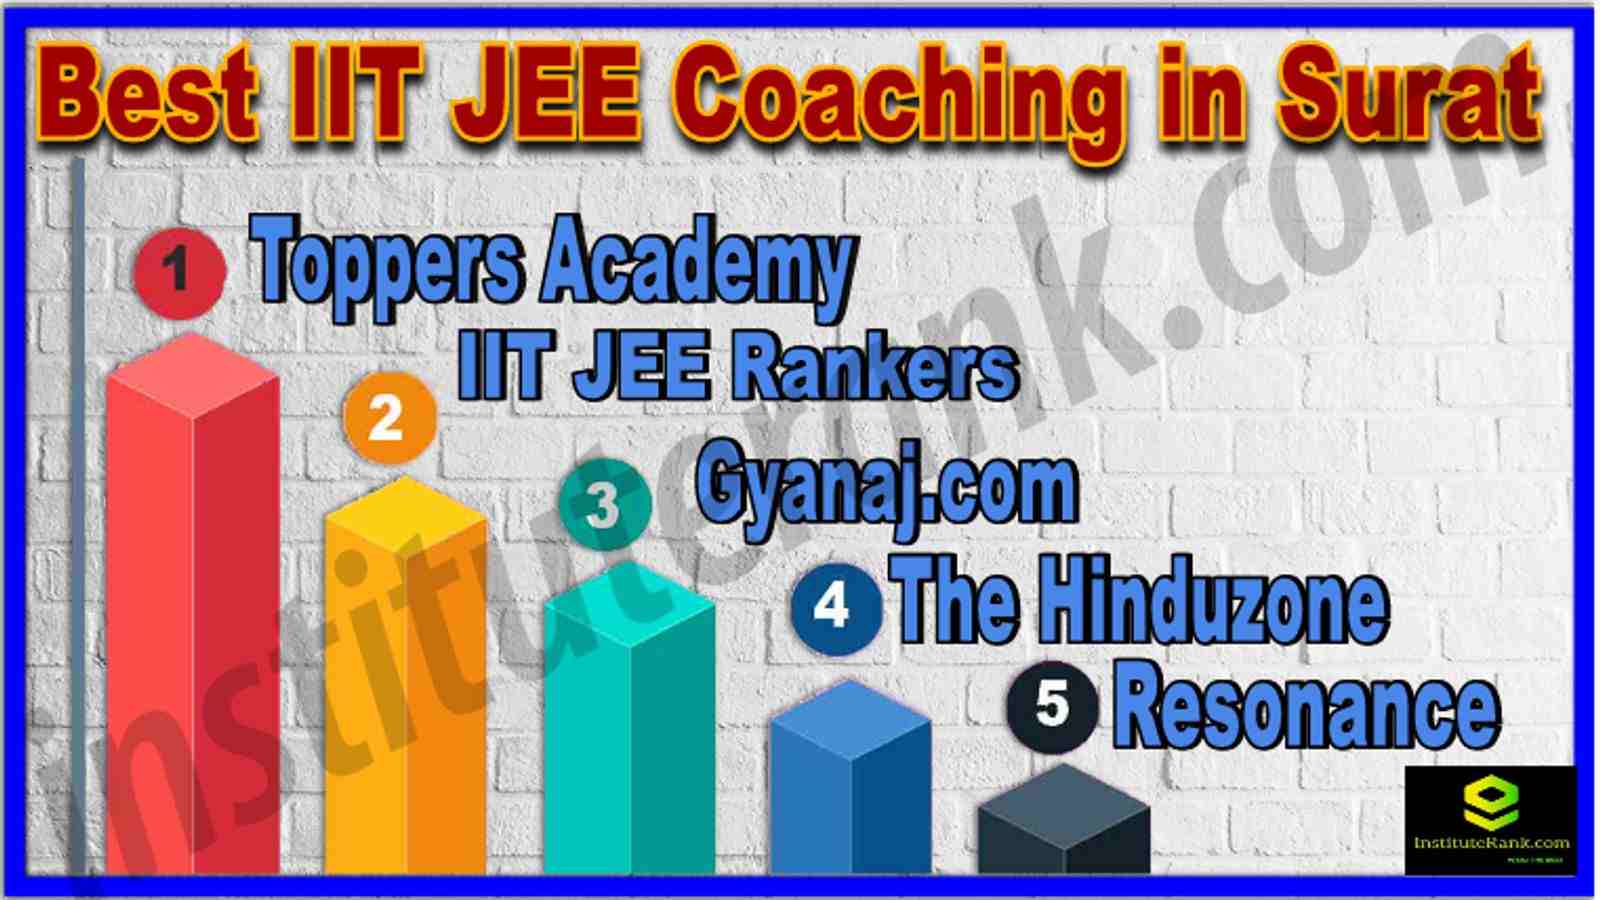 Best IIT JEE Coaching in Surat